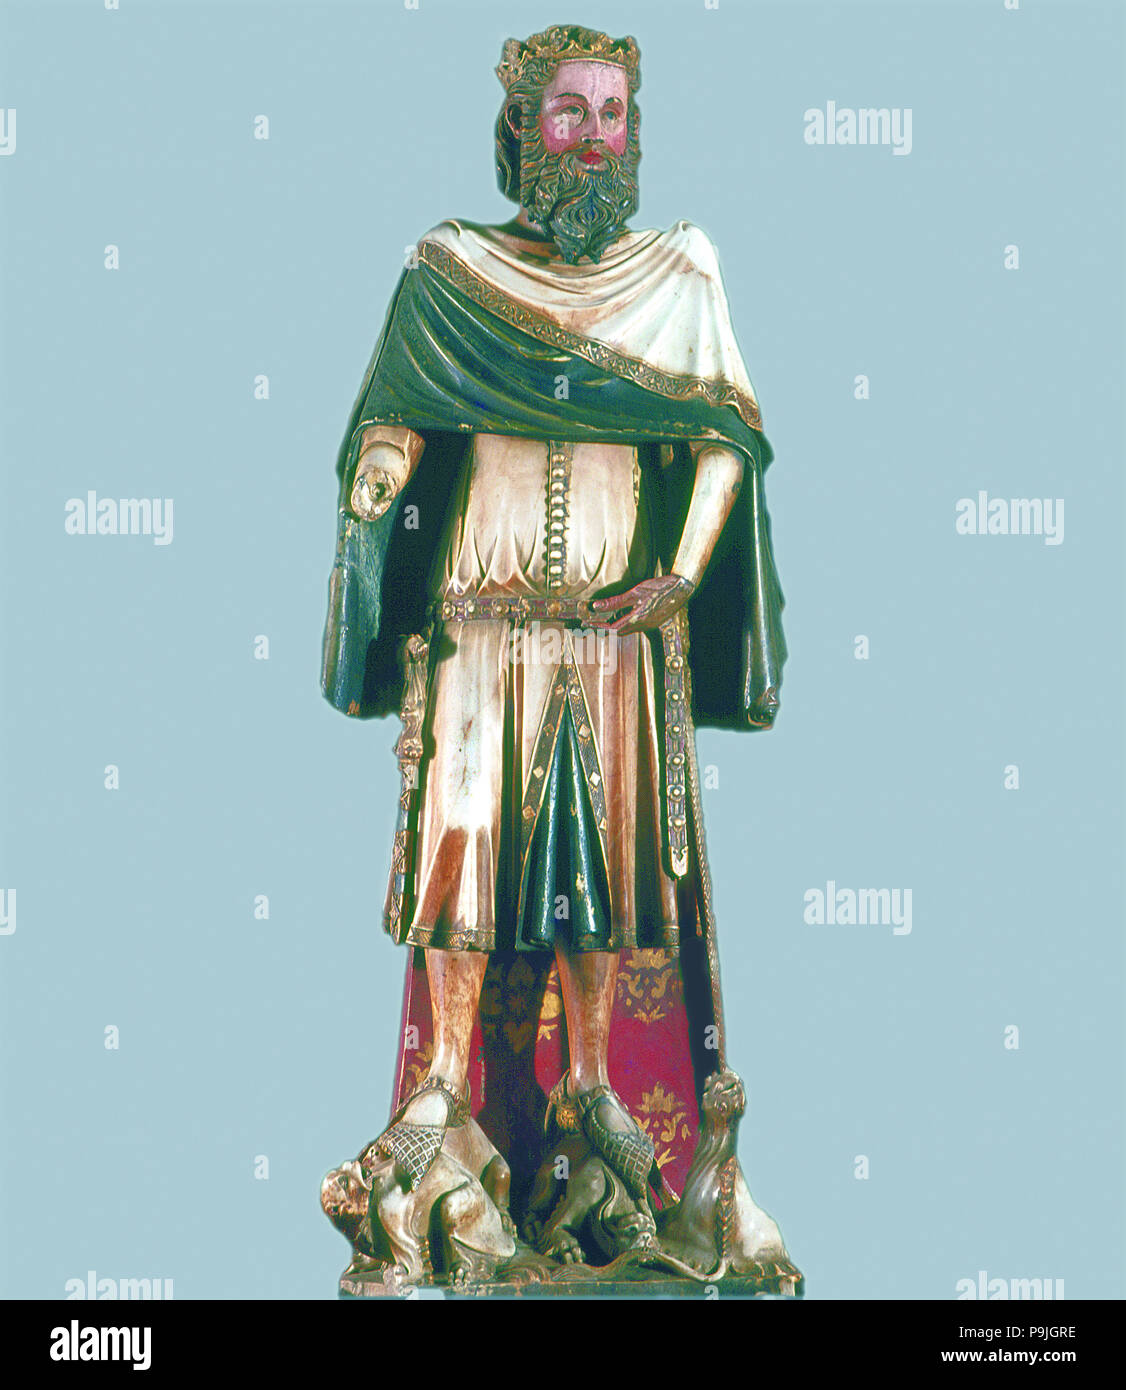 Statua di un re o di San Carlo Magno, polychromed scultura di alabastro c. 1350. Foto Stock